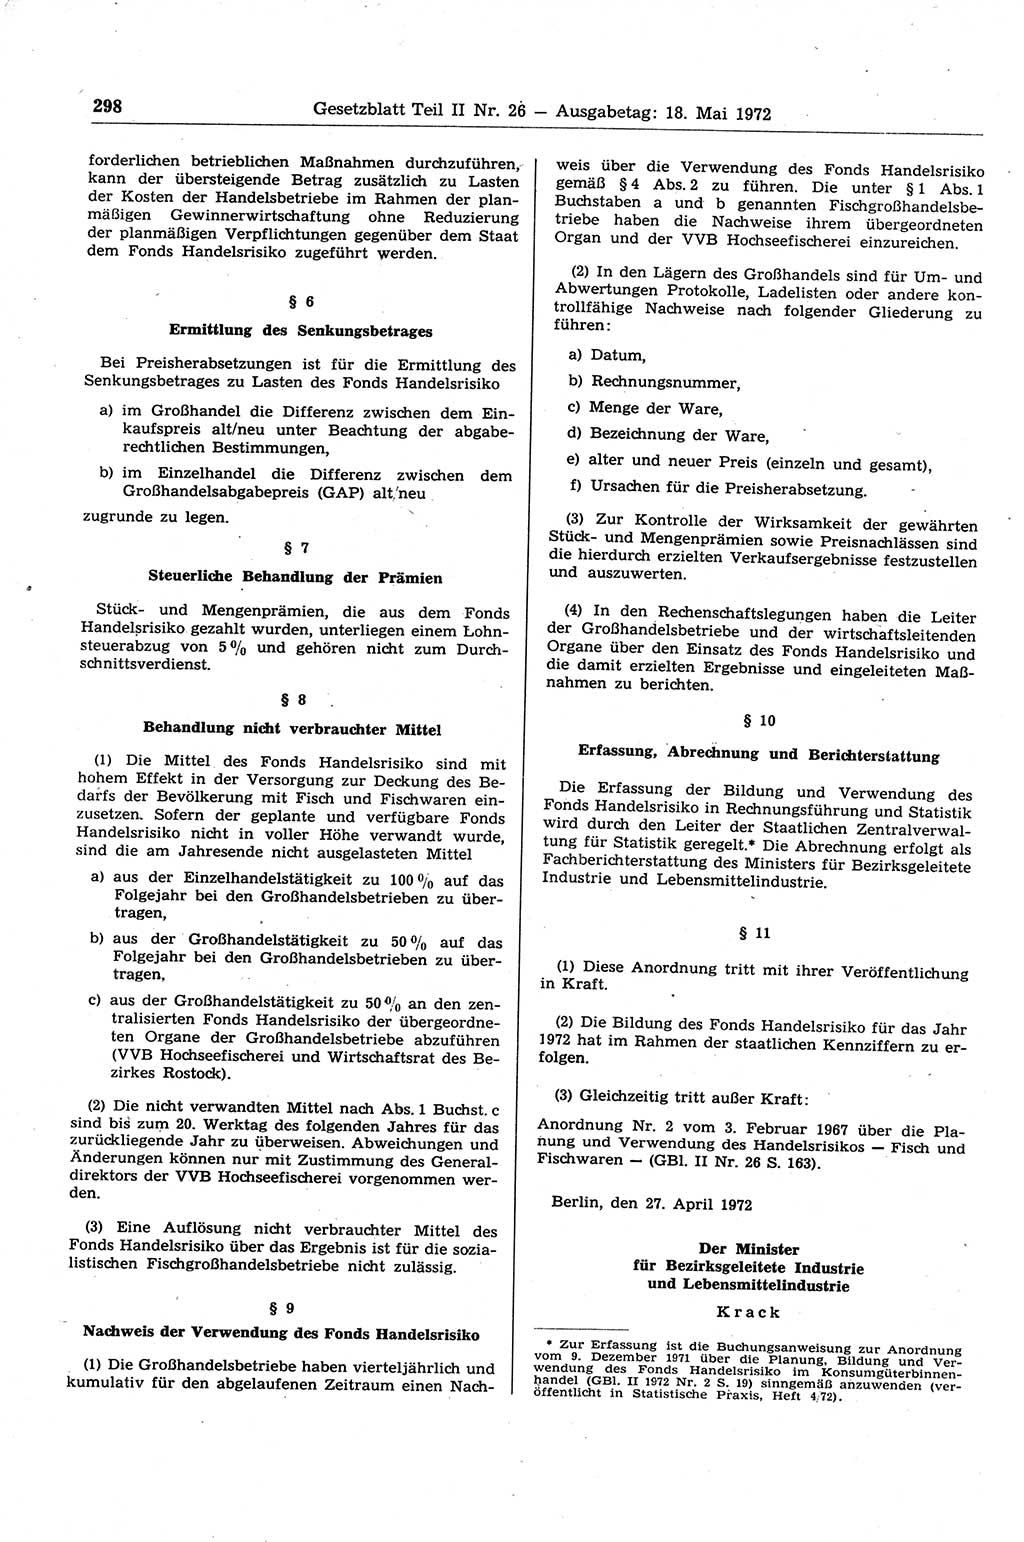 Gesetzblatt (GBl.) der Deutschen Demokratischen Republik (DDR) Teil ⅠⅠ 1972, Seite 298 (GBl. DDR ⅠⅠ 1972, S. 298)